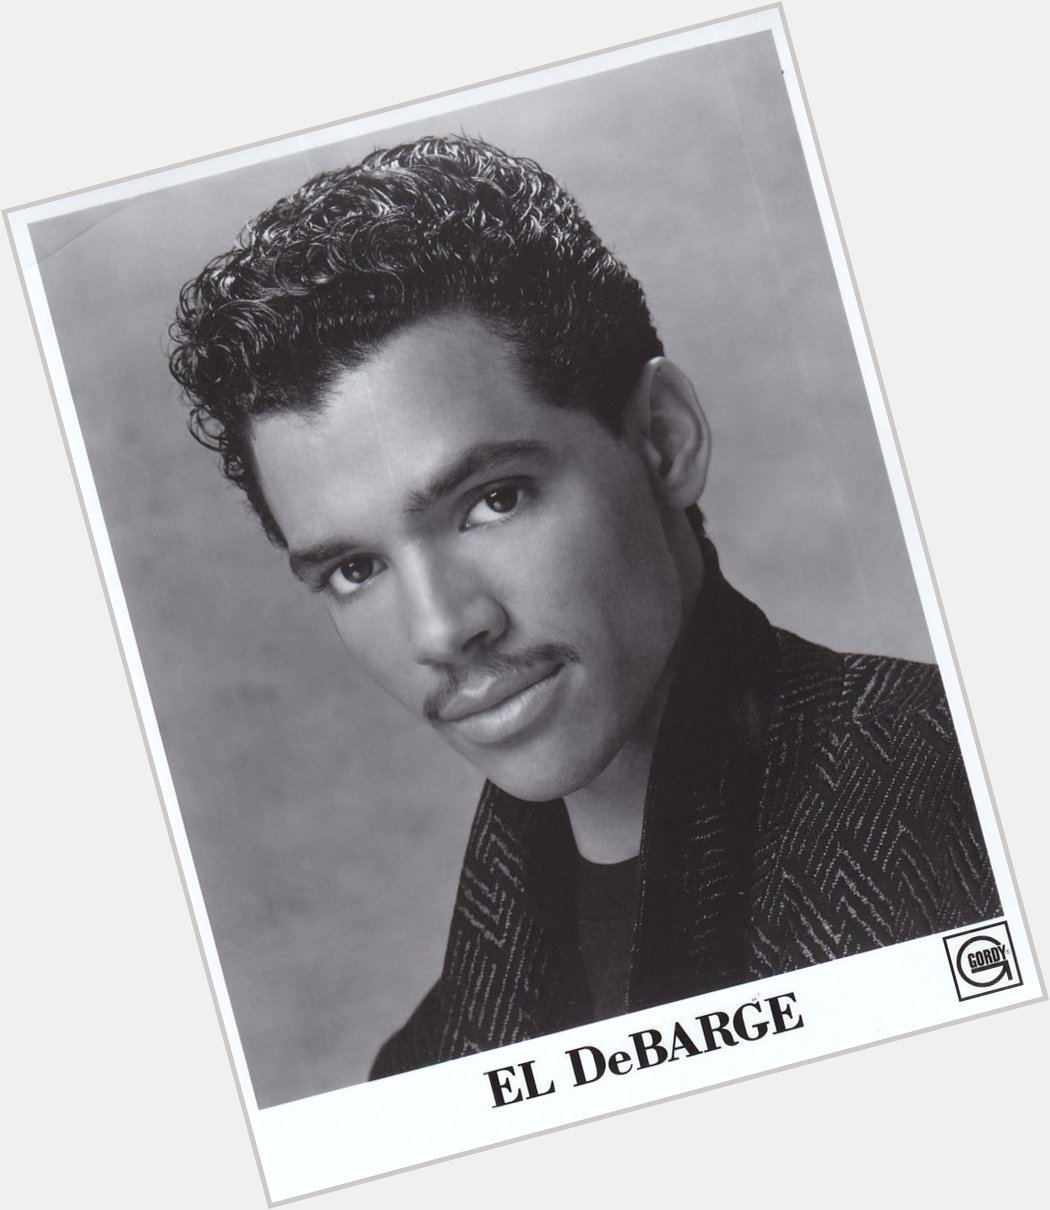 Happy Birthday El DeBarge (June 4, 1961) Motown singer.
Bio:
Video:  